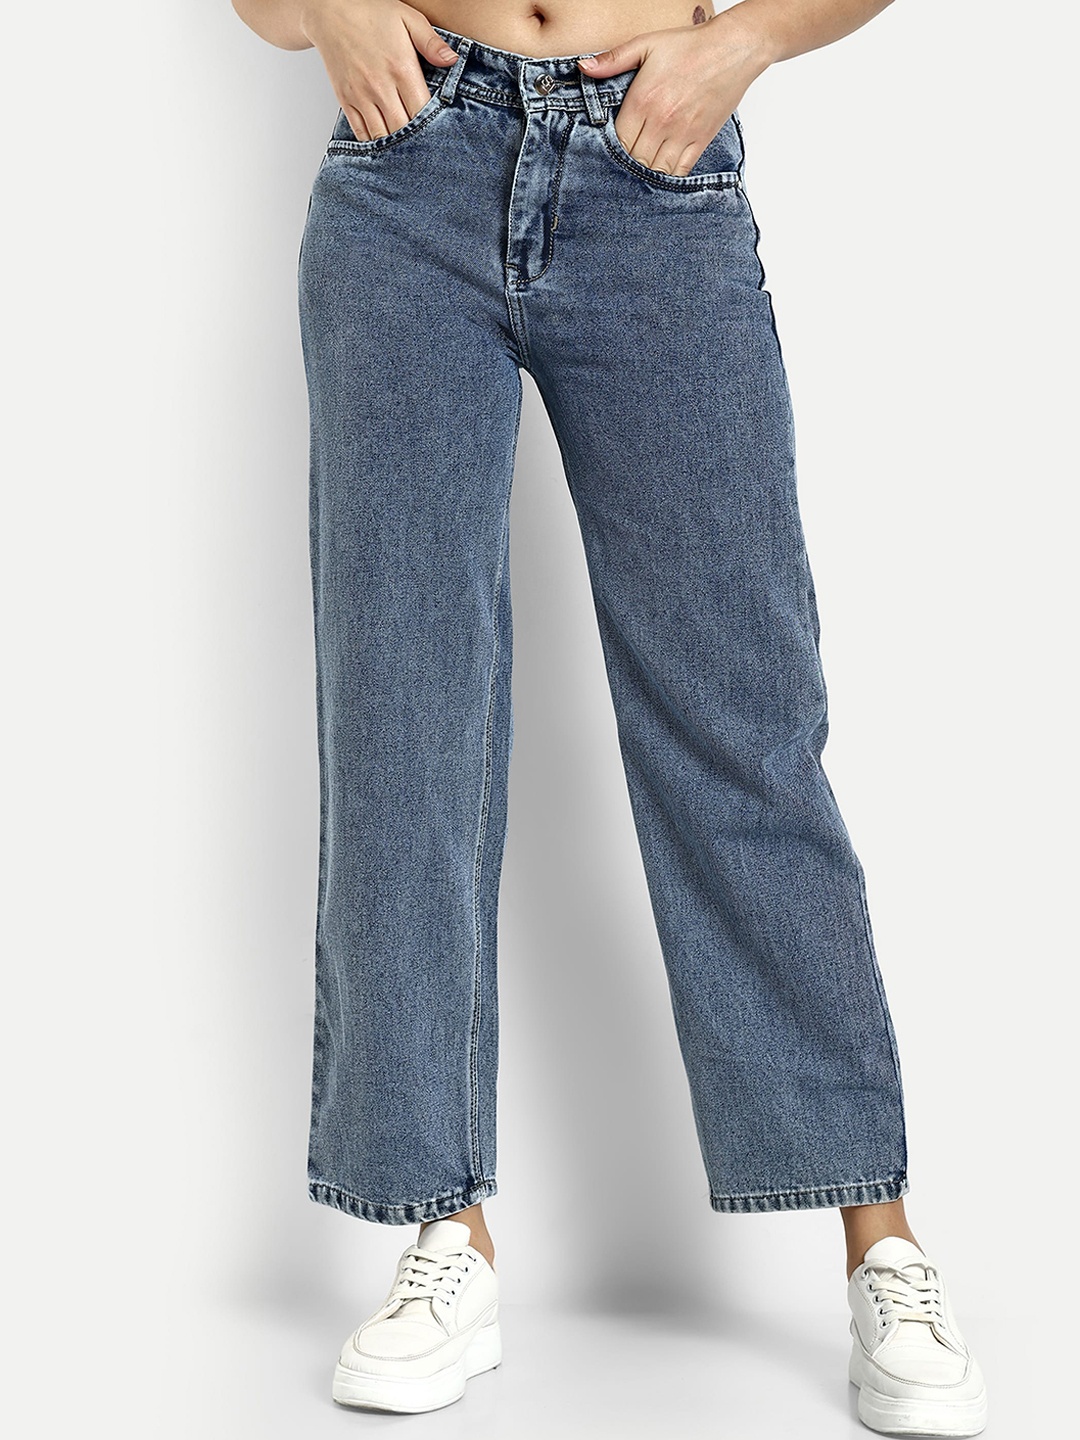 

Next One Women Smart Wide Leg High Rise Clean Look Light Fade Denim Cotton Jeans, Blue